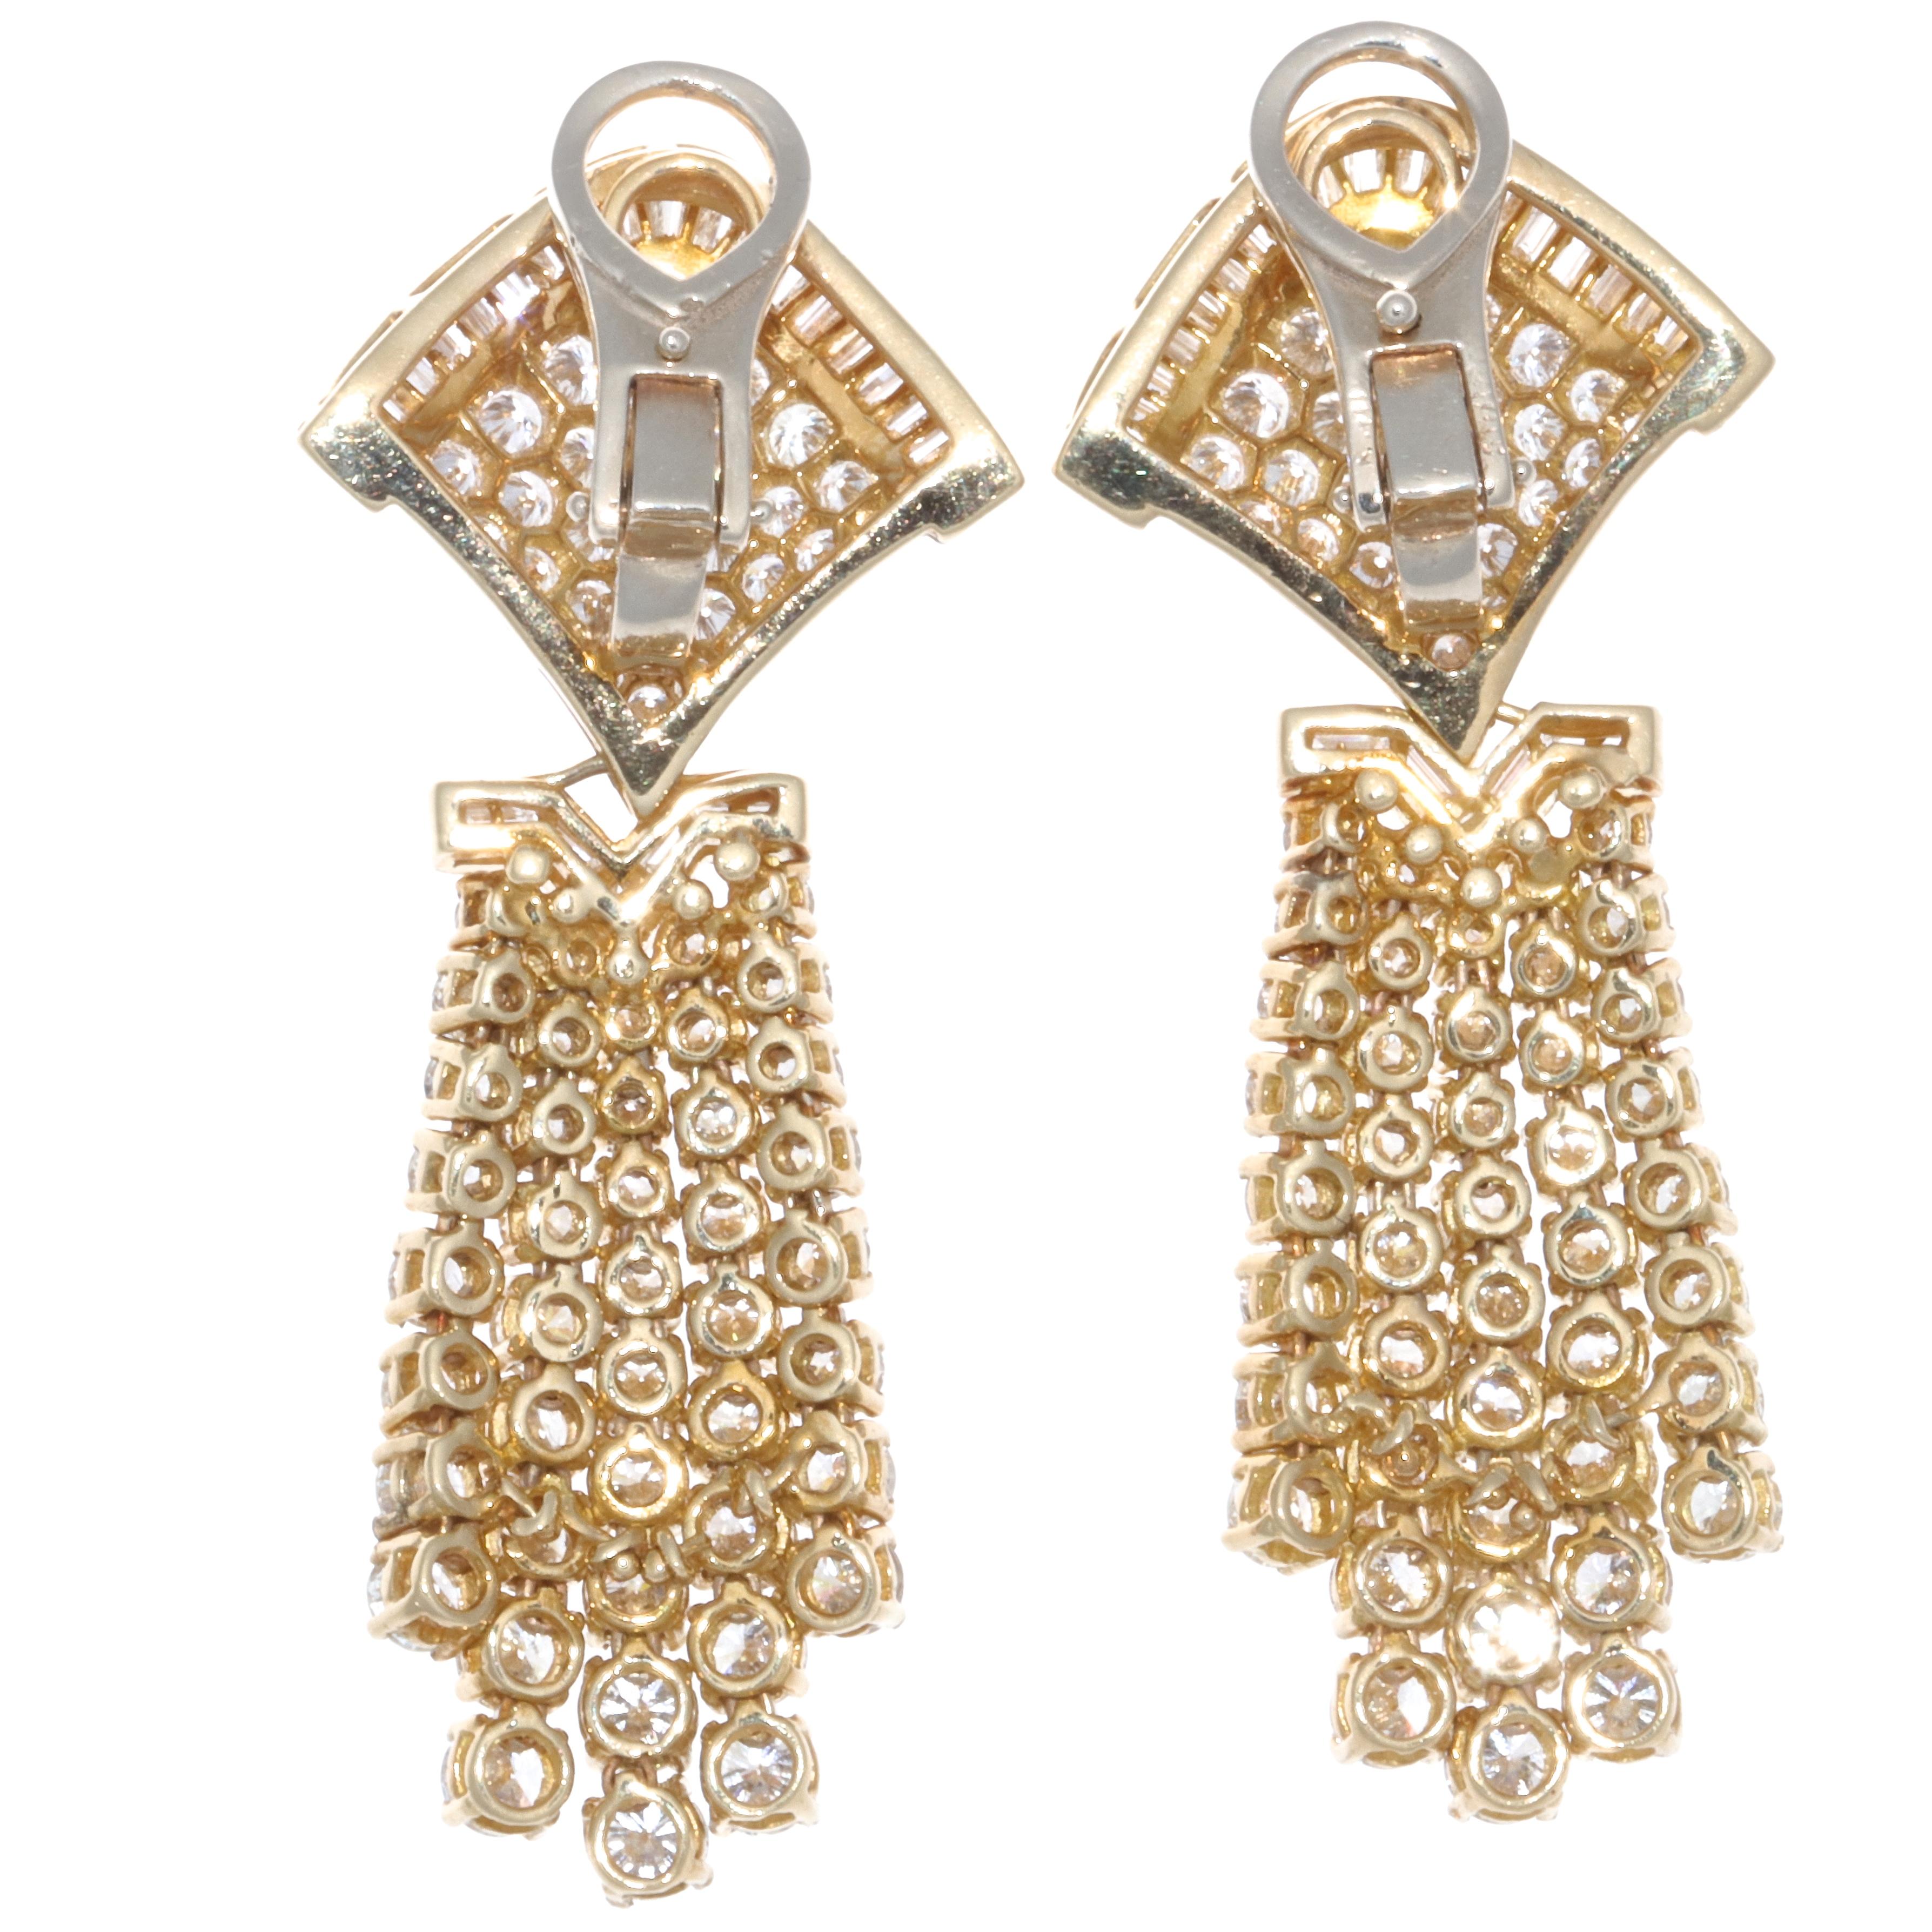 Brilliant Cut Vintage 1980s Diamond Chandelier 18 Karat Gold Earrings